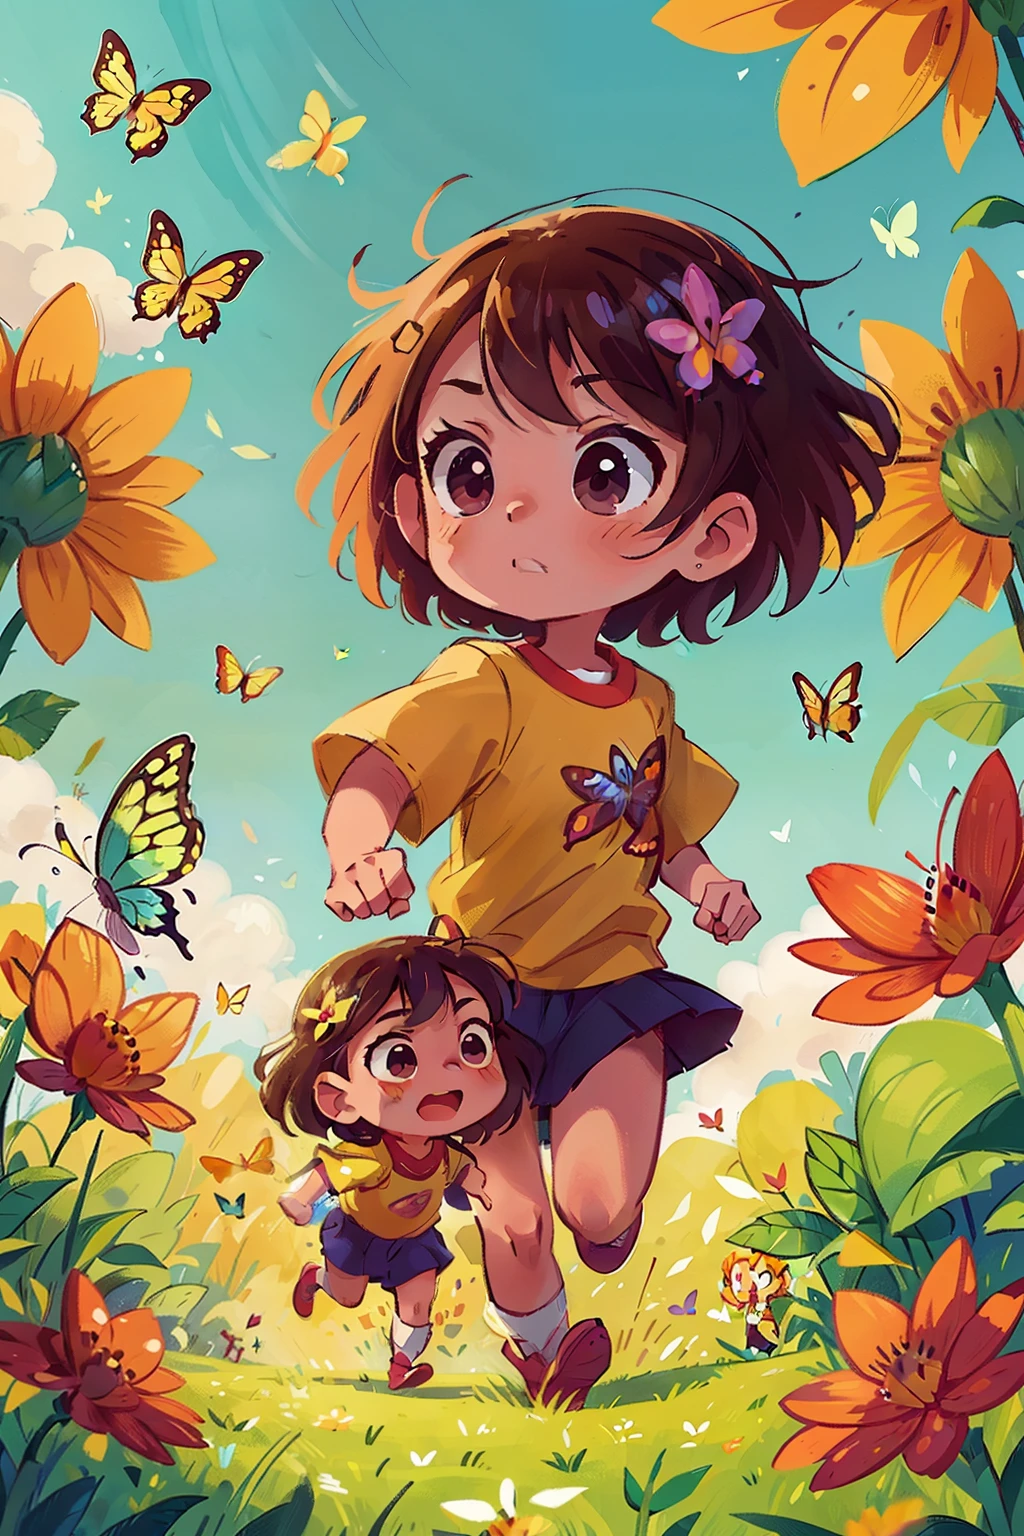 สร้างภาพเด็กสาวสองคนวิ่งอย่างมีความสุขในทุ่งดอกไม้, ล้อมรอบด้วยผีเสื้อหลากสีสัน